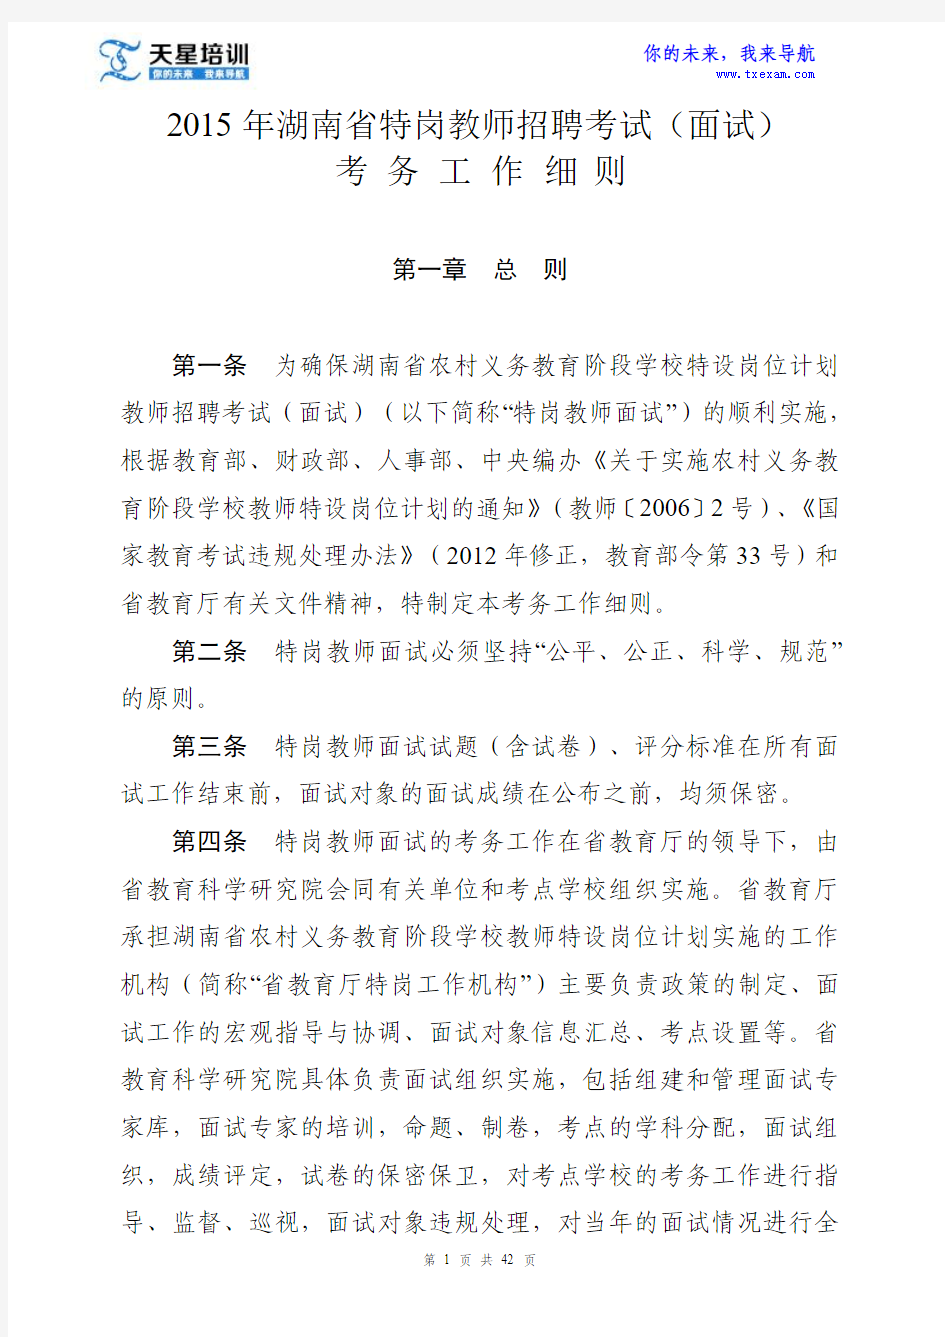 2015年湖南省特岗教师招聘考试(面试)考务工作 细 则